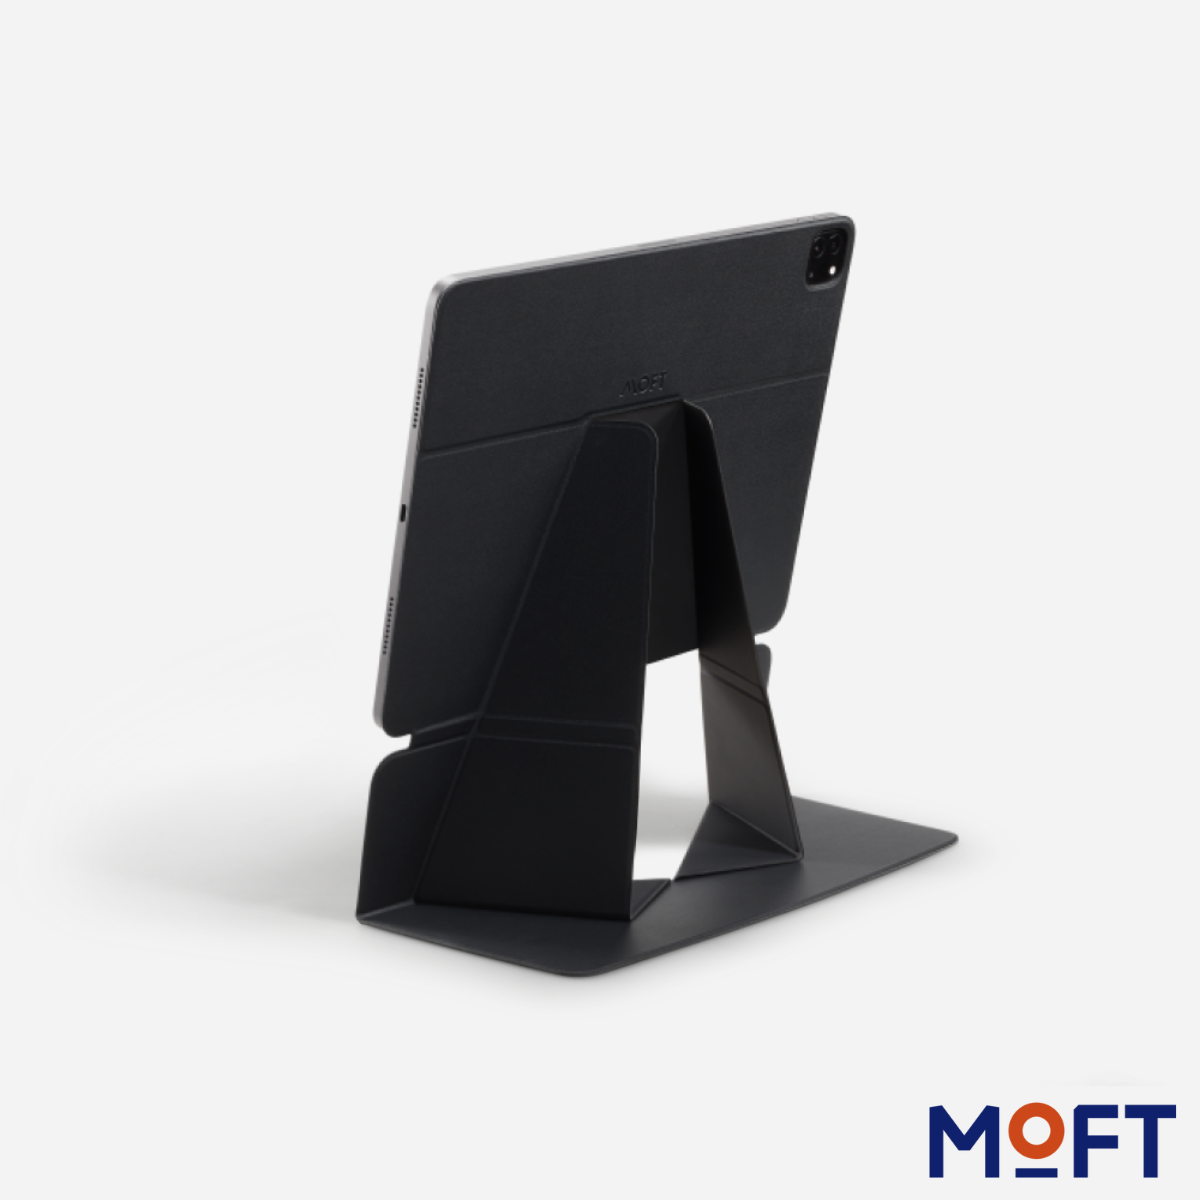 Moft Snap Float Folio 磁吸平板保護殼連支架 MS026 iPad Pro 12.9"黑色 送禮 工作 溫書 睇片 煲劇